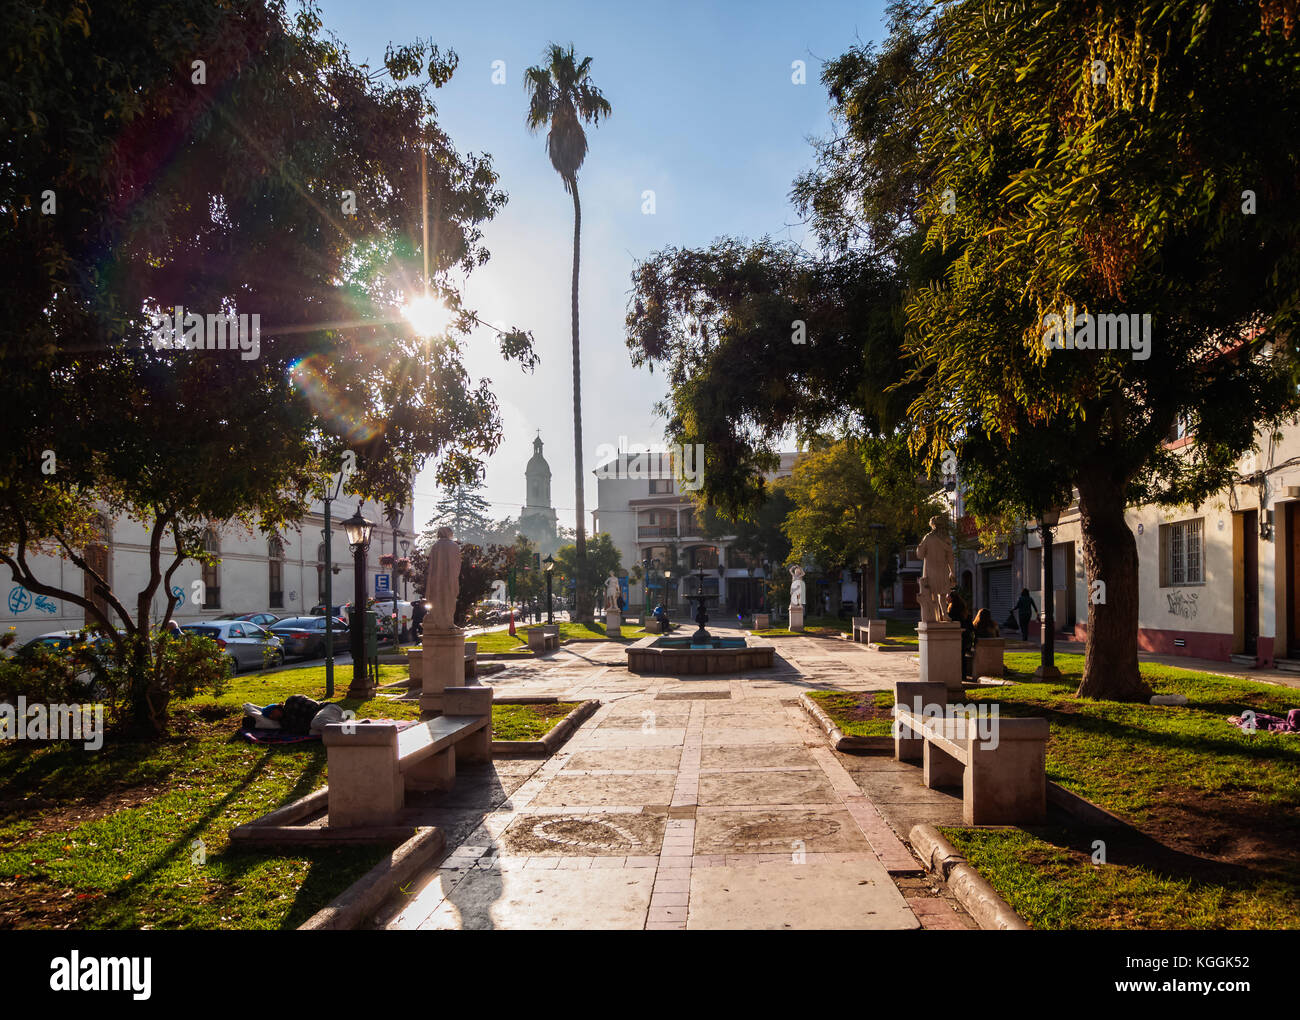 Square in front of the Santo Domingo Church, La Serena, Coquimbo Region, Chile Stock Photo